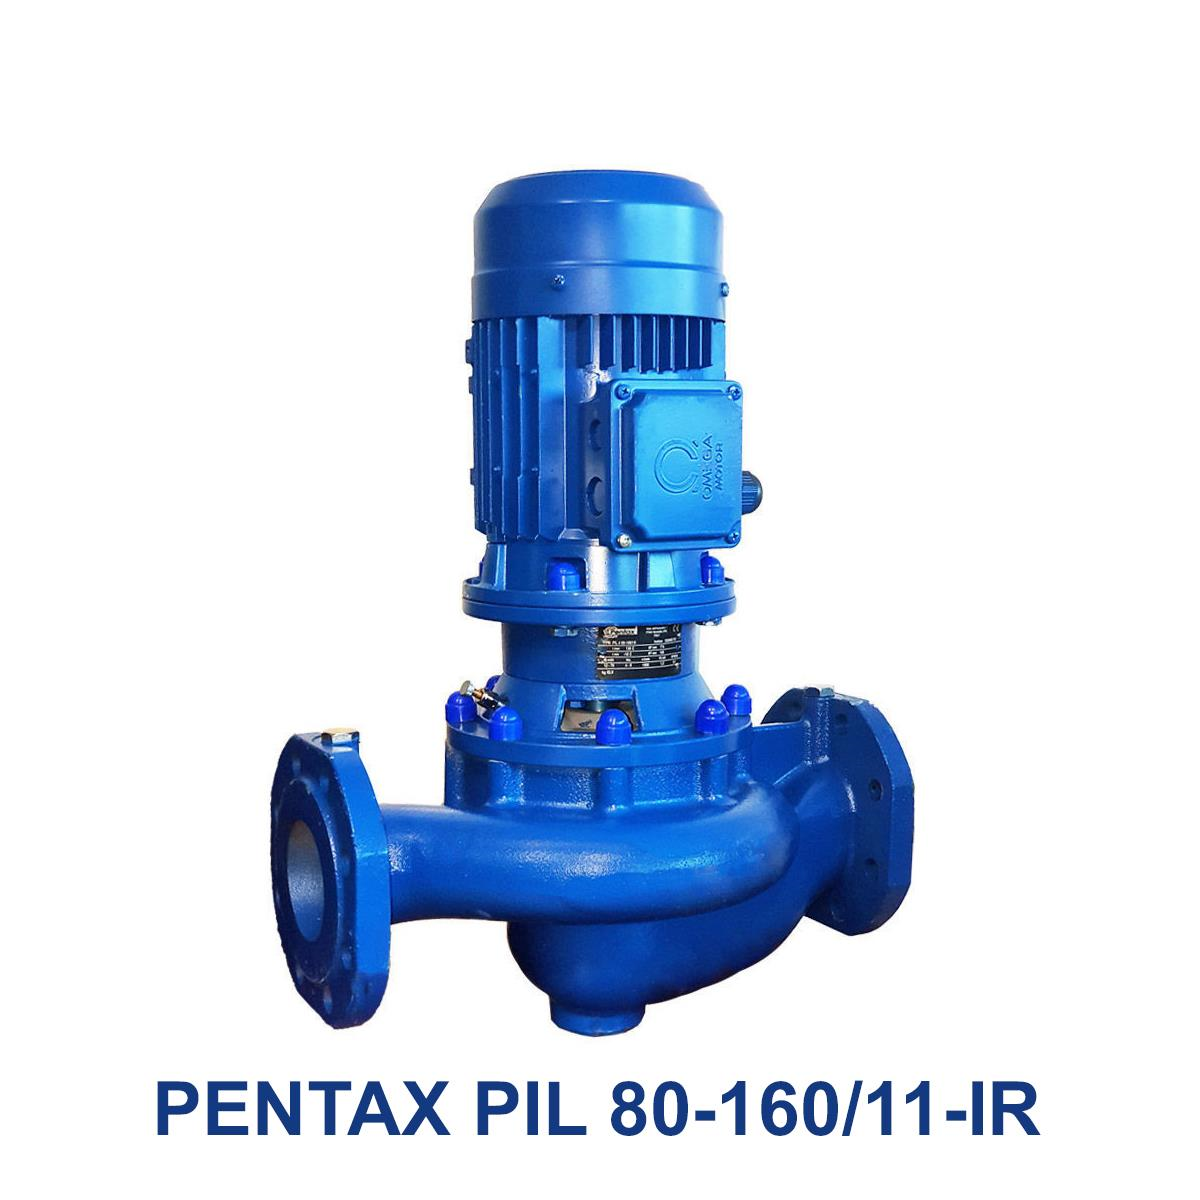 PENTAX-PIL-80-160-11-IR